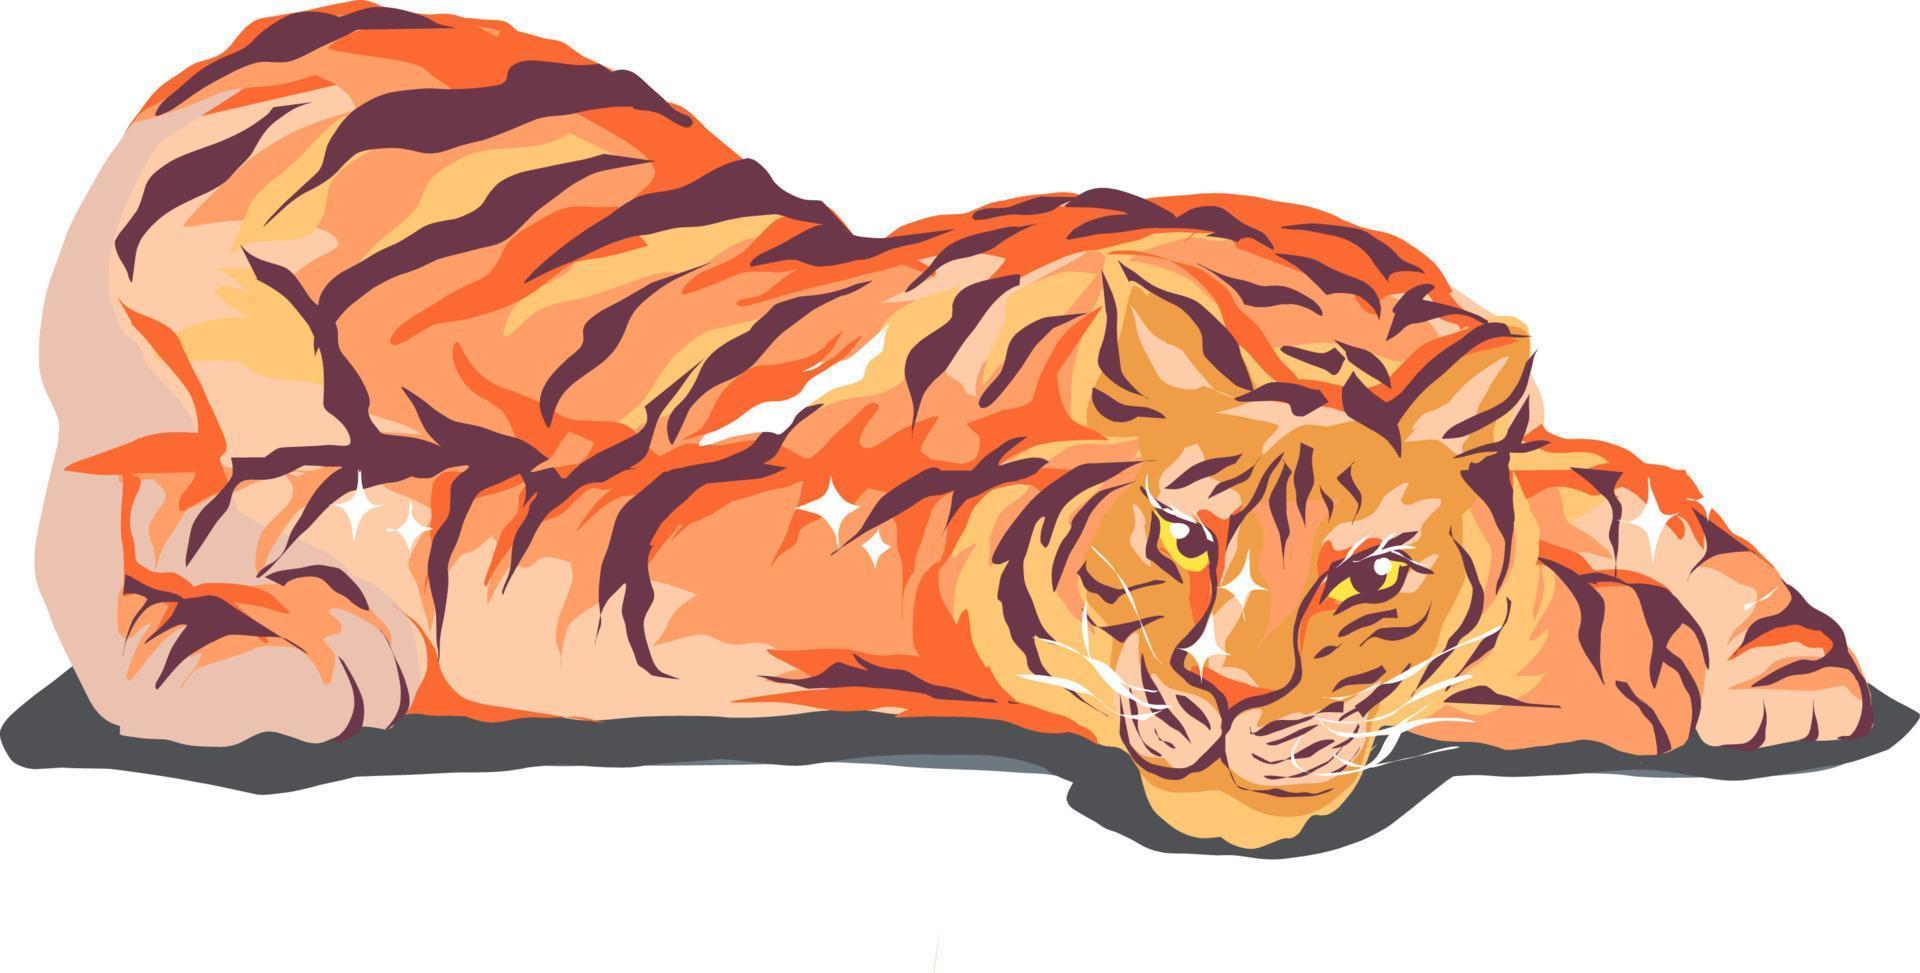 Vektorgrafik, Tiger legt sich mit Köpfen auf die Pfoten. transparenter Hintergrund. Wildtier, Raubkatze, Symbol des Jahres. Tierwelt vektor